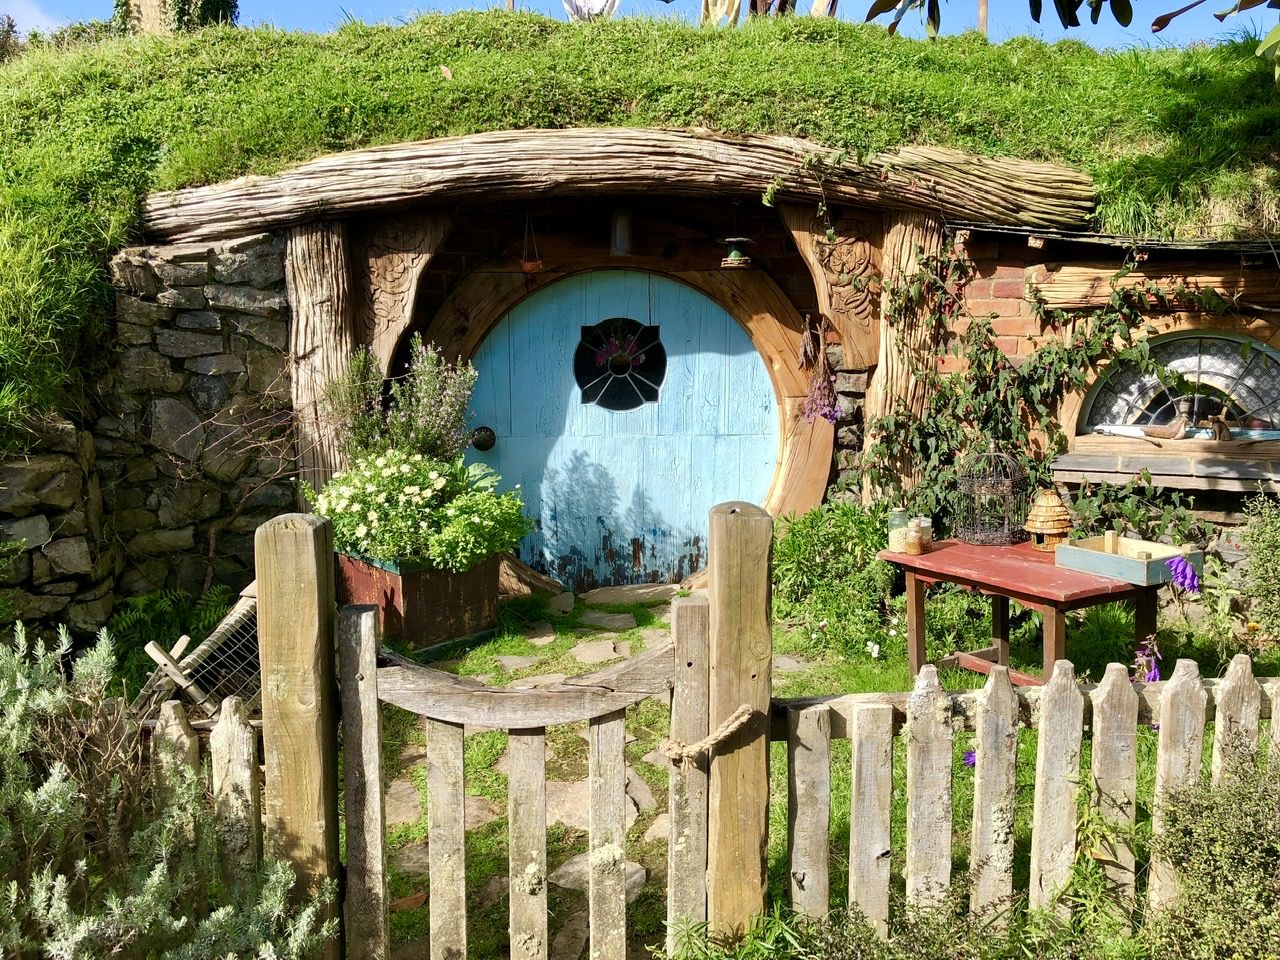 A hobbit hole door